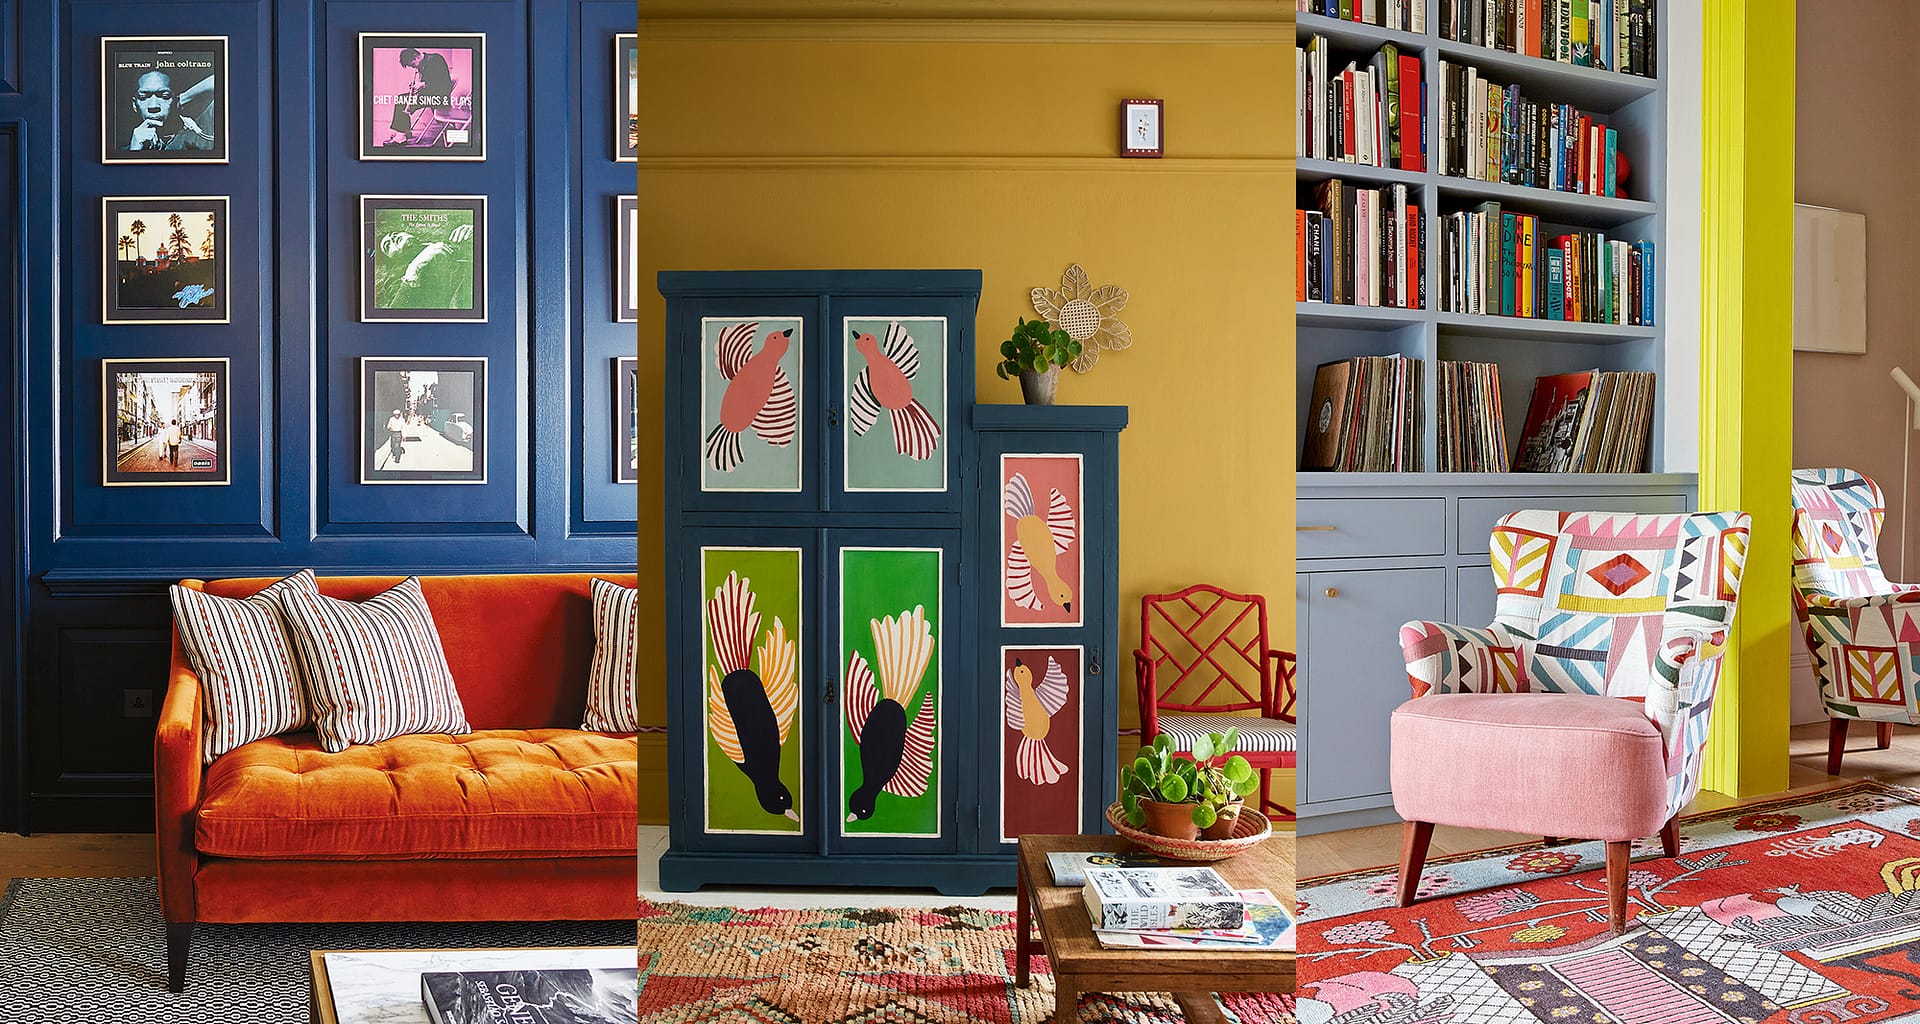 Culorile au un impact puternic asupra stării noastre de spirit și a atmosferei dintr-un spațiu interior. Alegerea culorilor potrivite poate contribui la crearea unei atmosfere reconfortante și pline de vitalitate în casa ta.